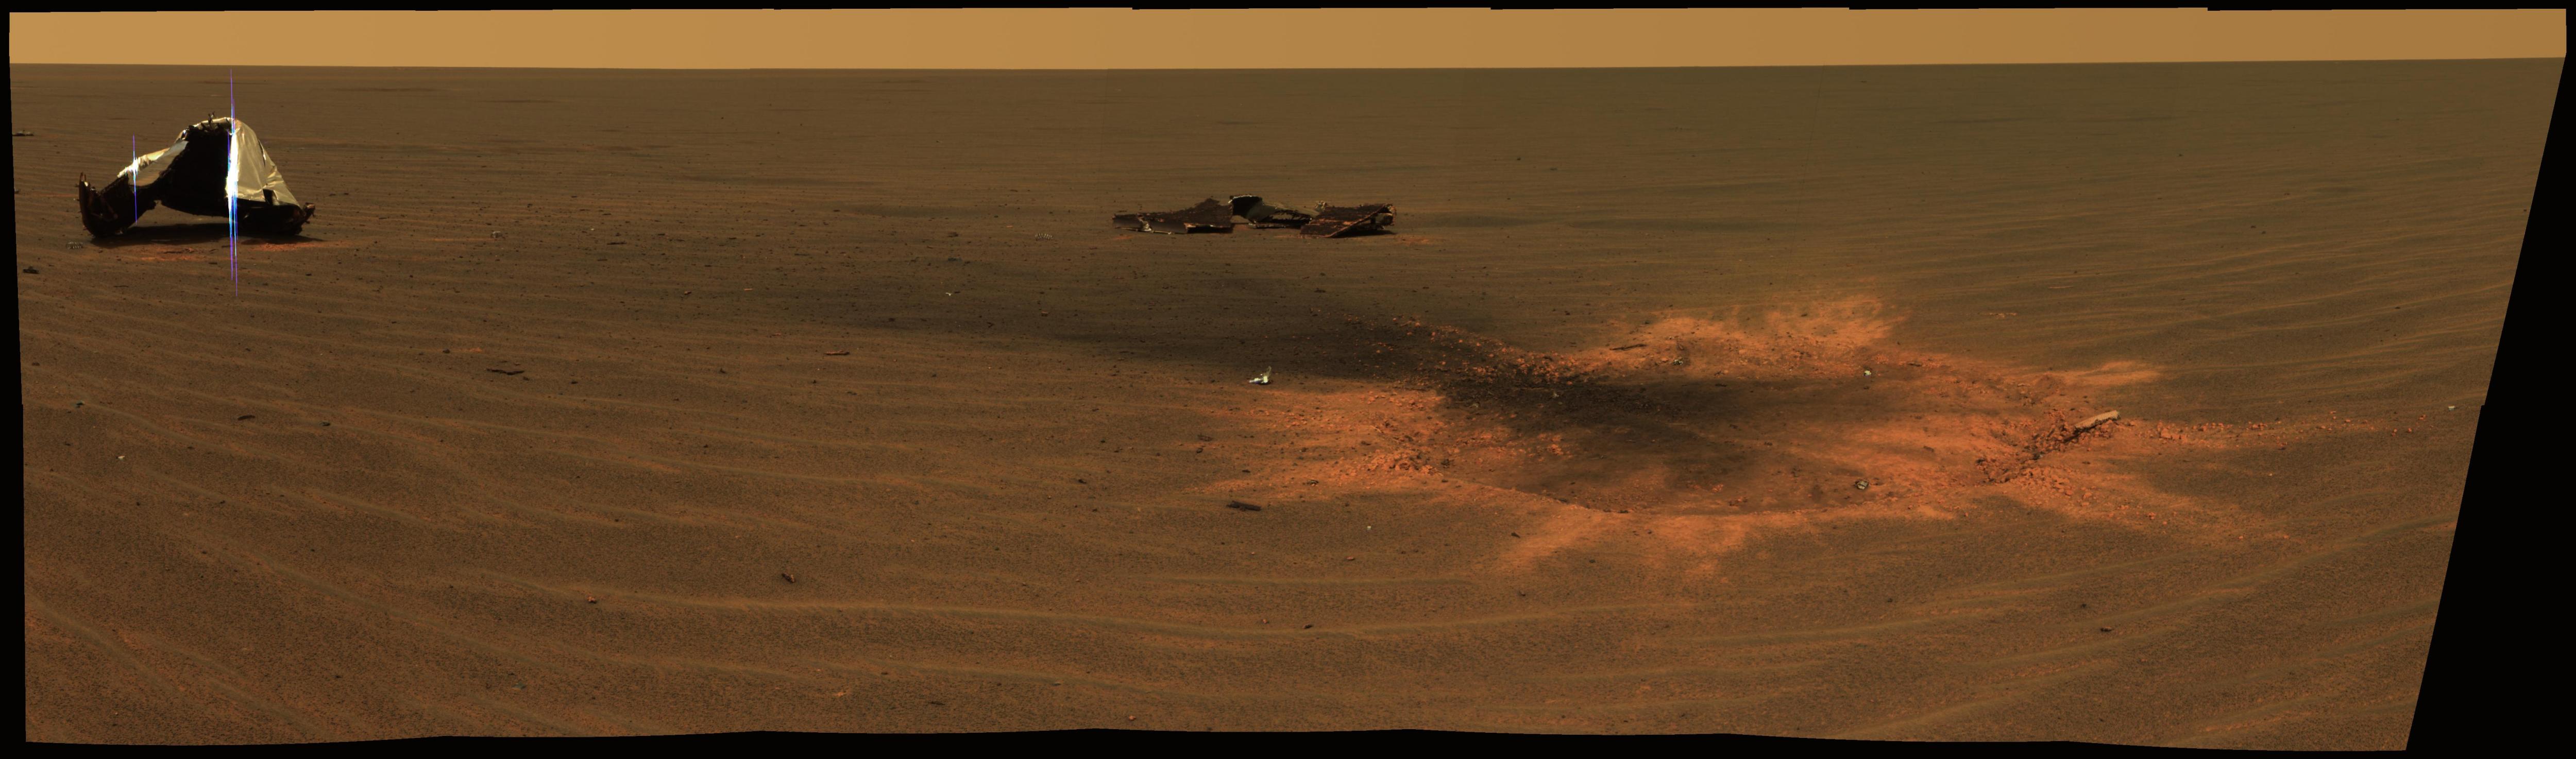 Udarnyi krater na Marse v meste padeniya teplovogo kozhuha